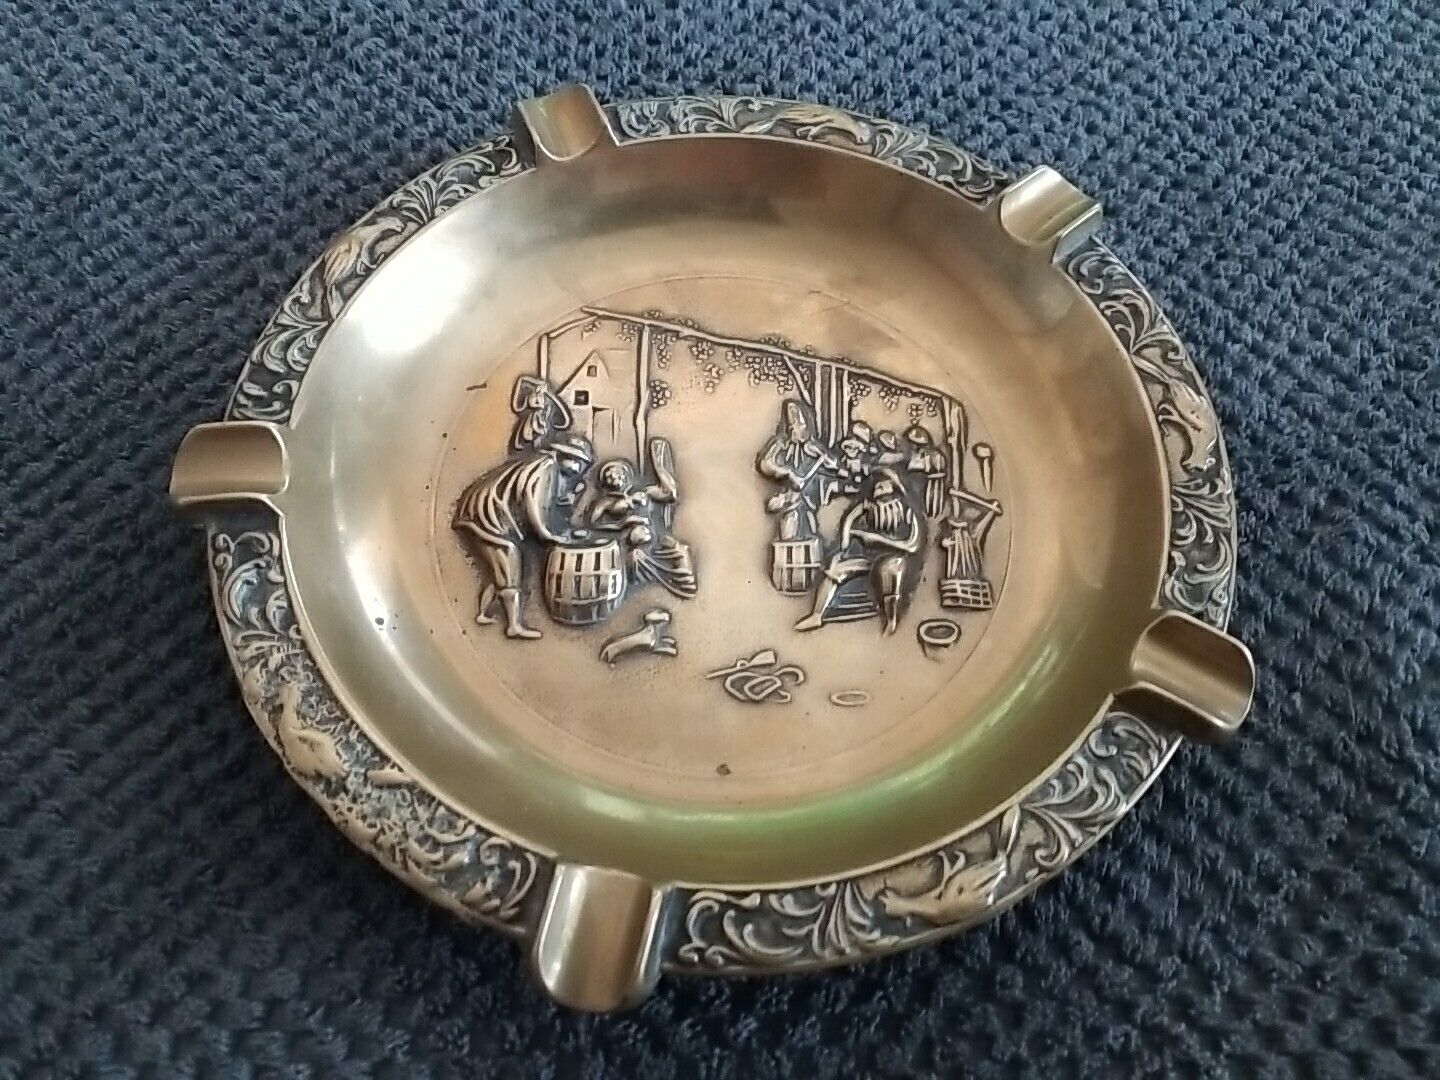 Vintage large brass ashtray, used